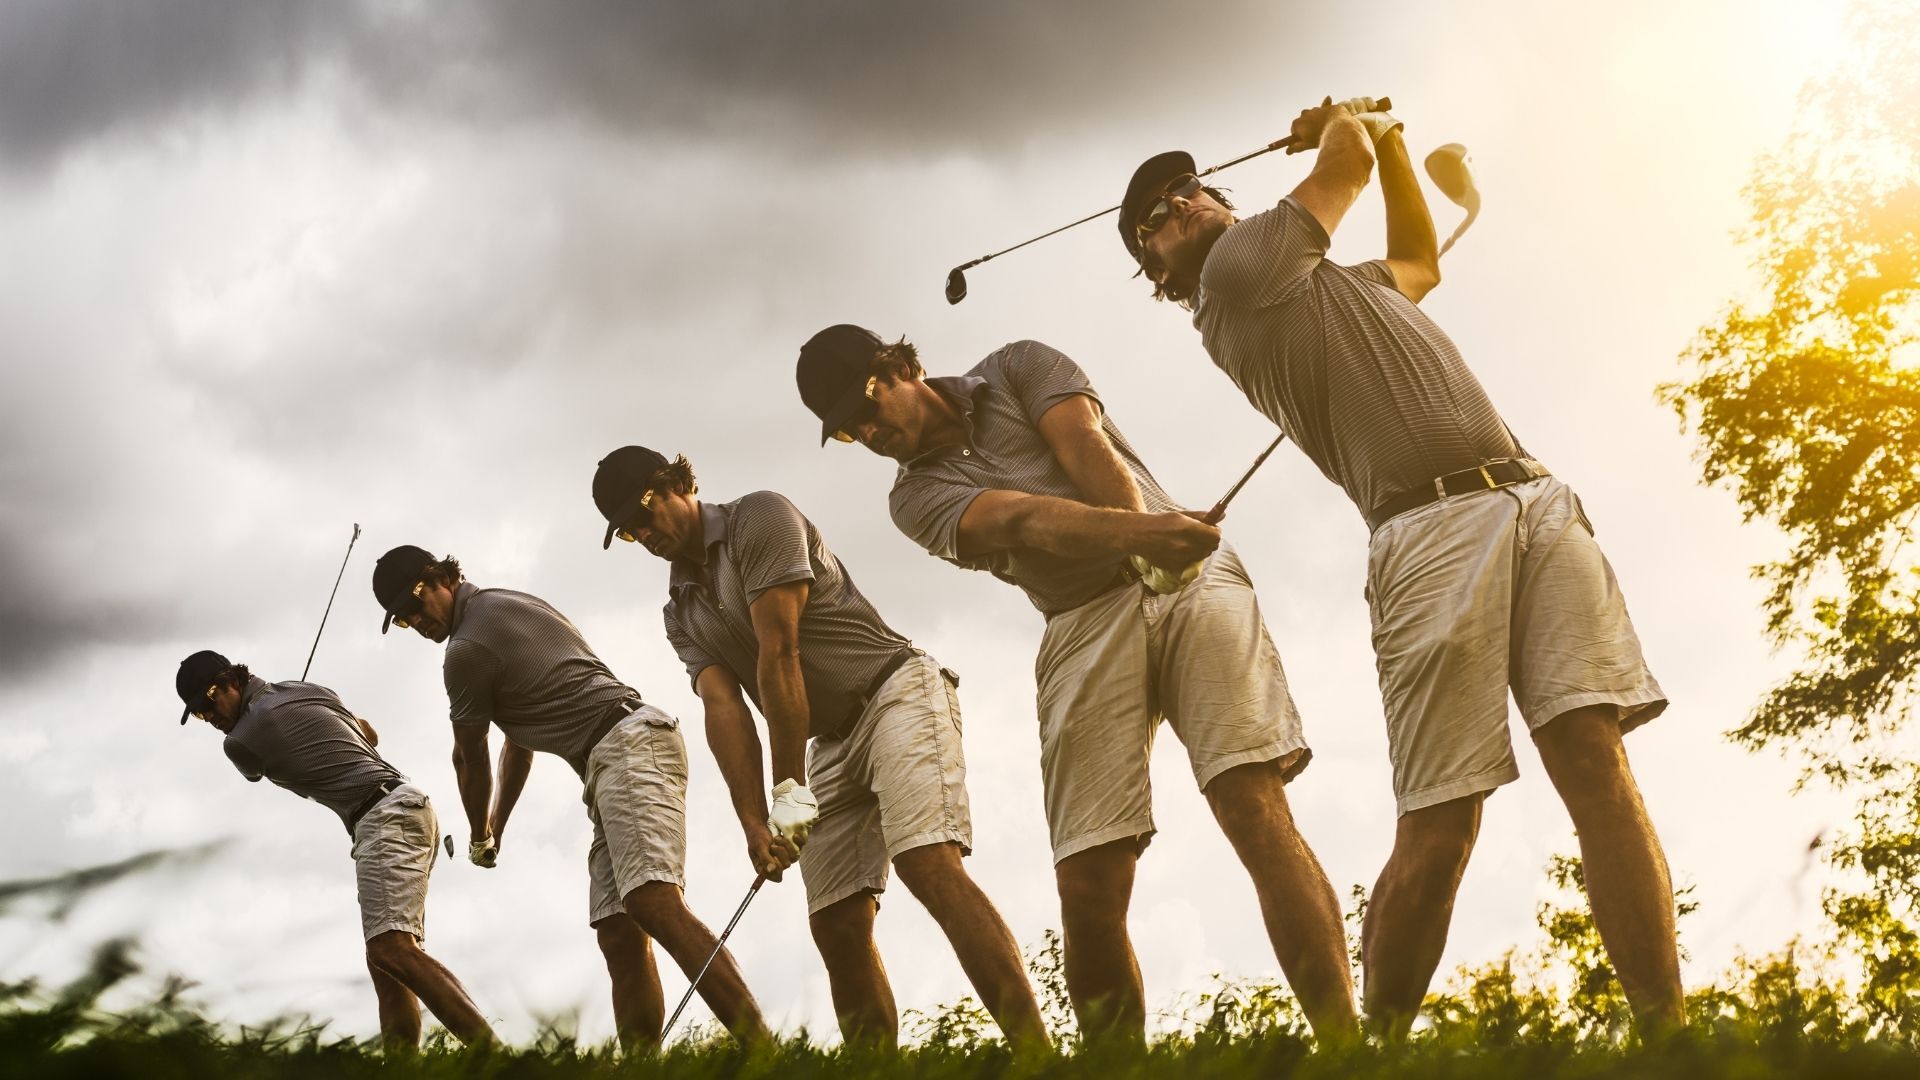 Average Handicap Index of Golfers in the US